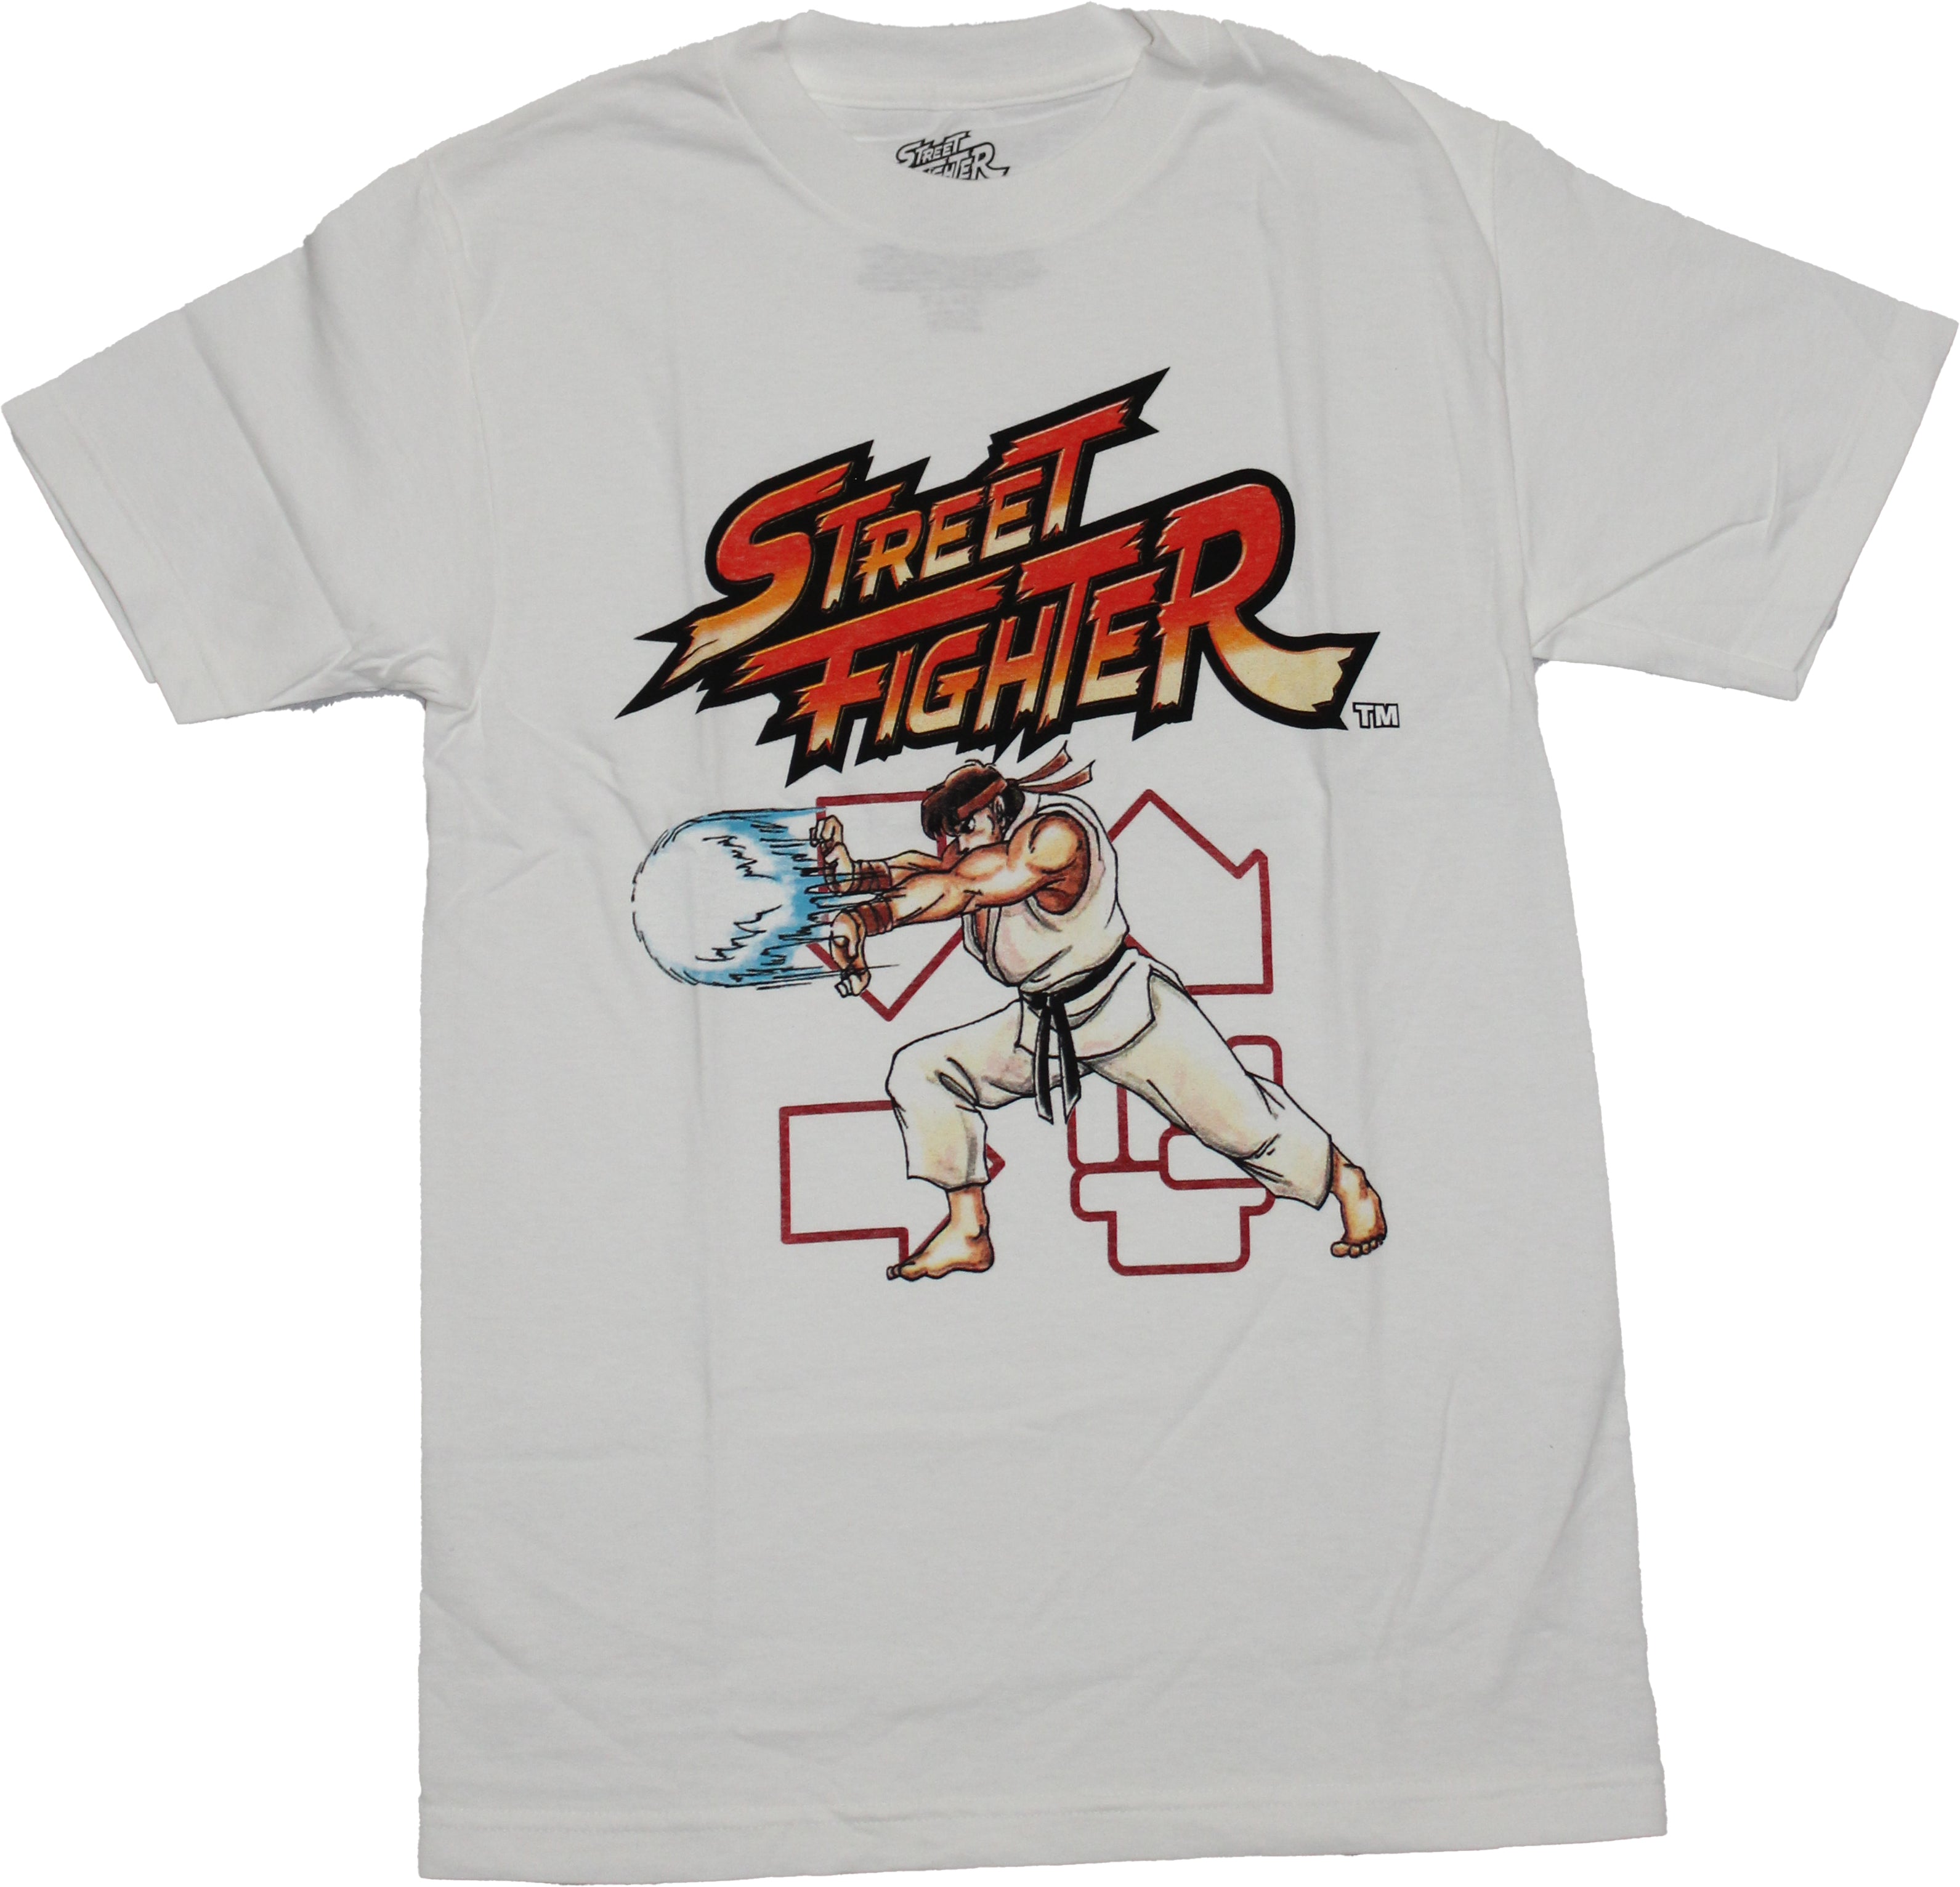 Street Fighter Mens T-Shirt - Ryu Hadoken Throw